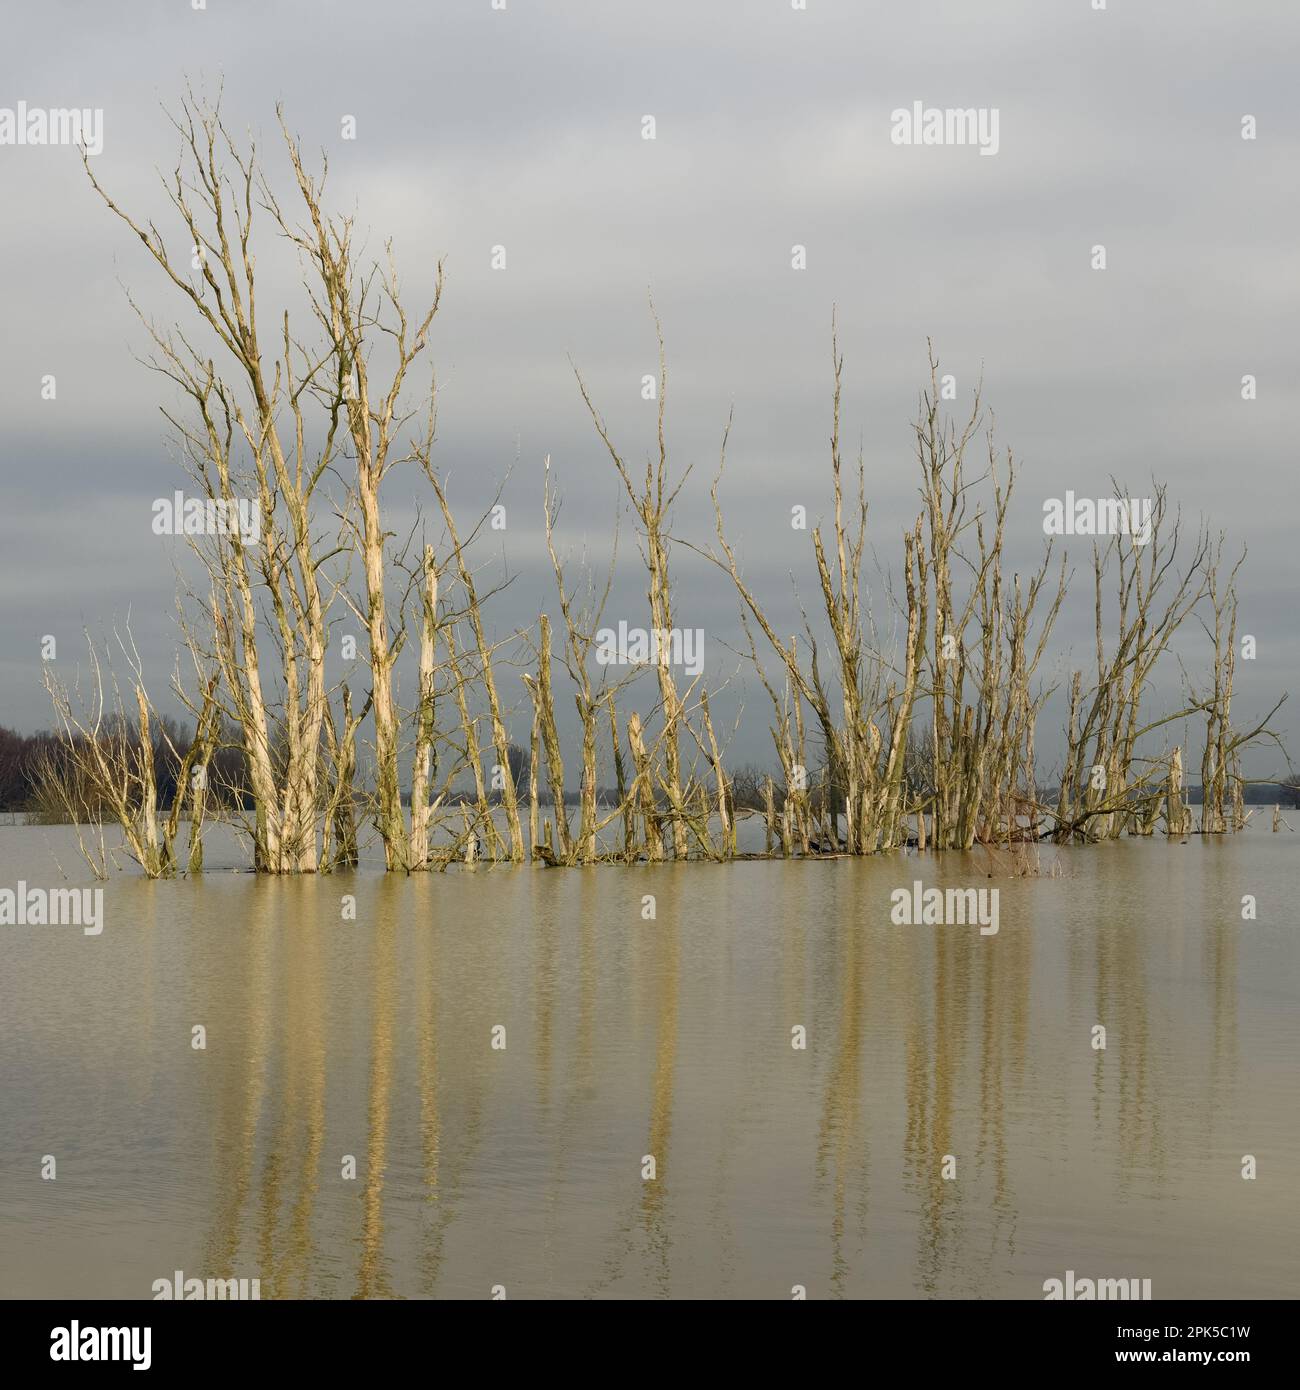 menace... Inondation du Rhin ( île Bislicher près de Xanten ), groupe mort d'arbres se reflétant dans l'eau d'inondation Banque D'Images